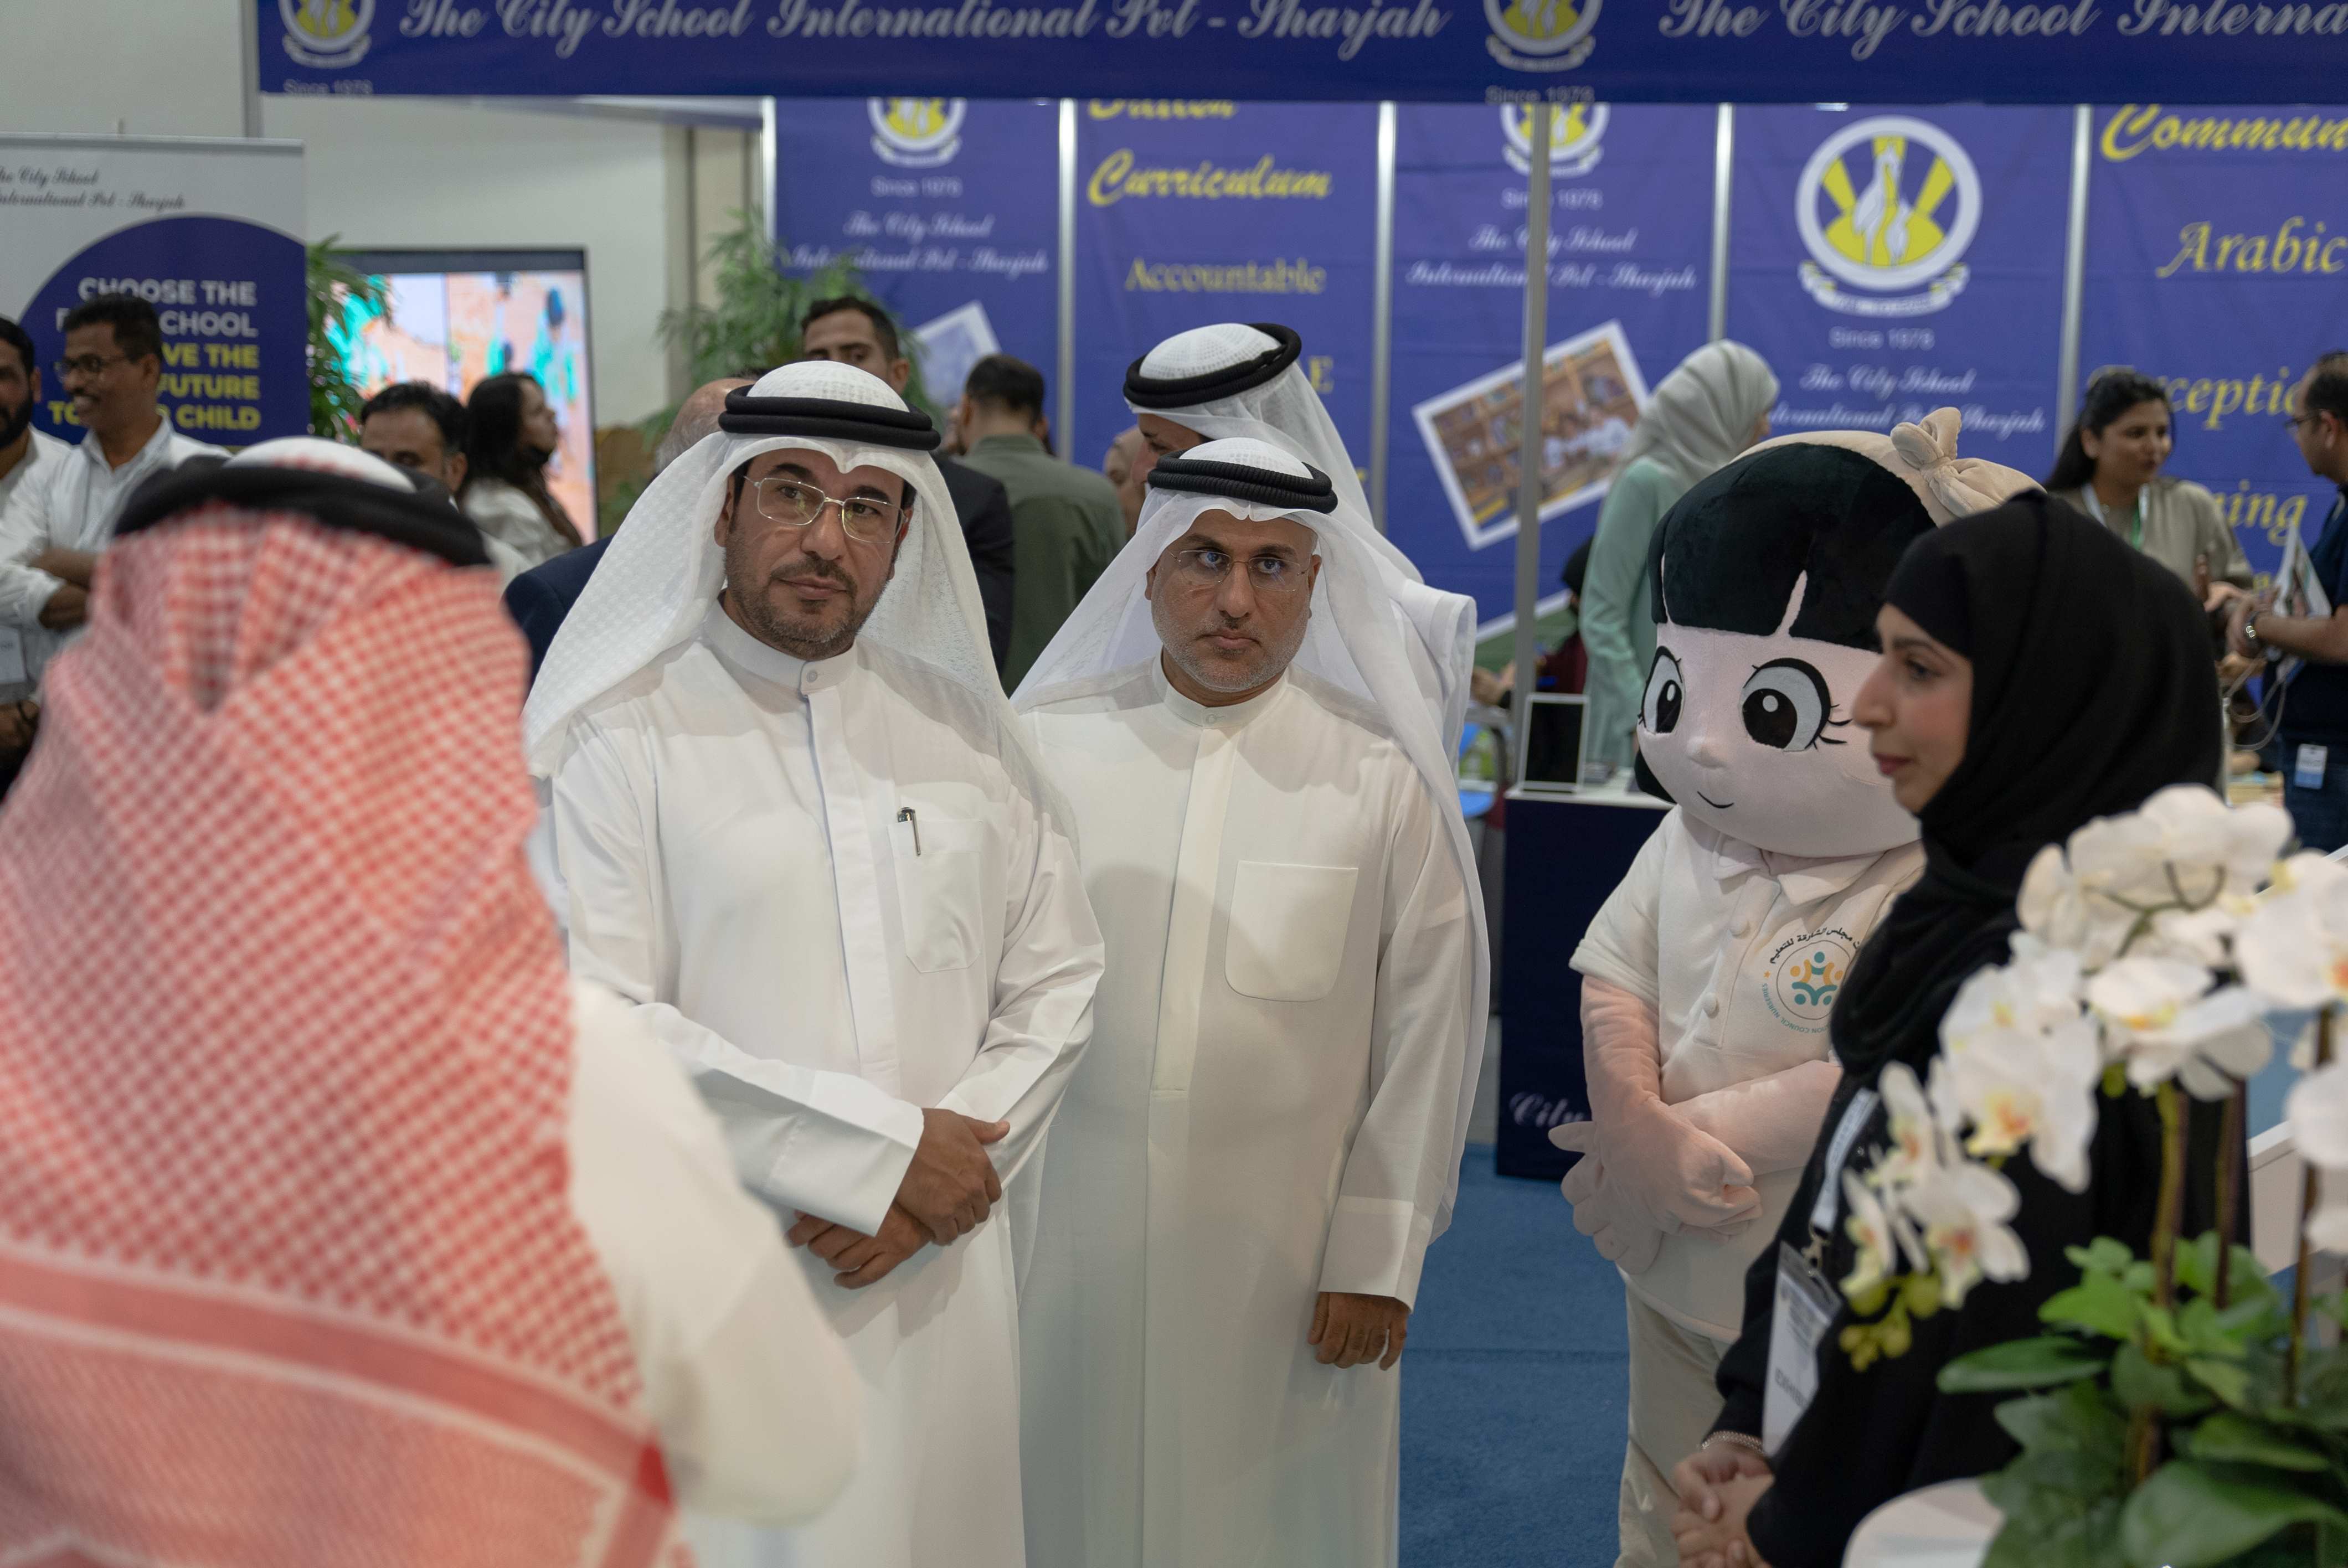 النسخة الثانية من "معرض الإمارات للمدارس والحضانات" 19-21 ابريل المقبل